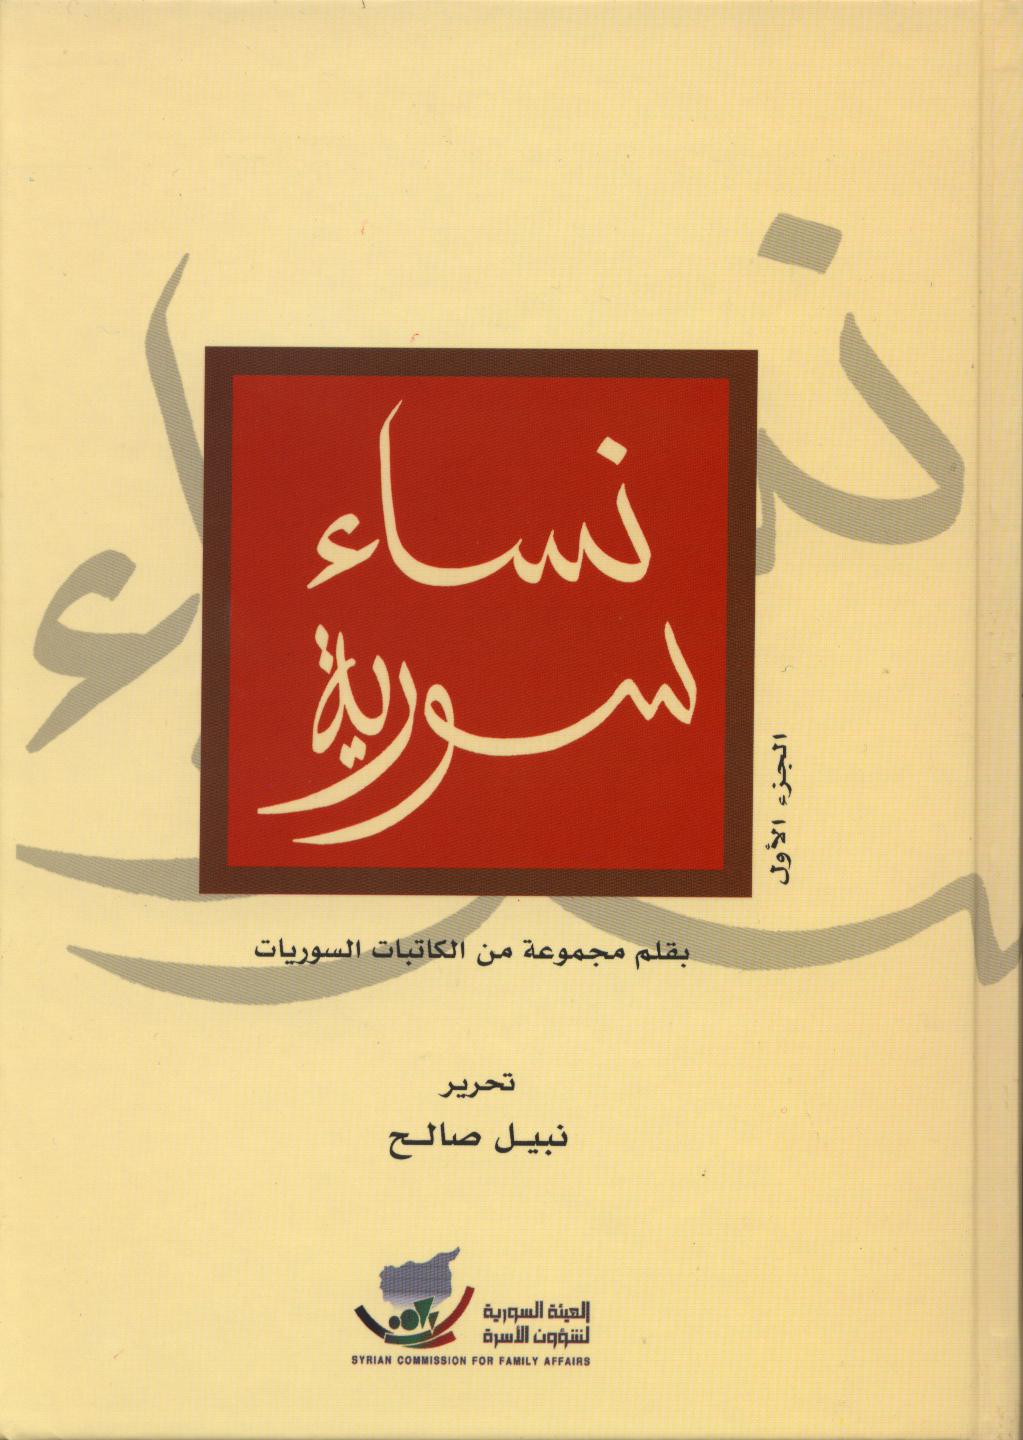 كتاب "نساء سورية"2008